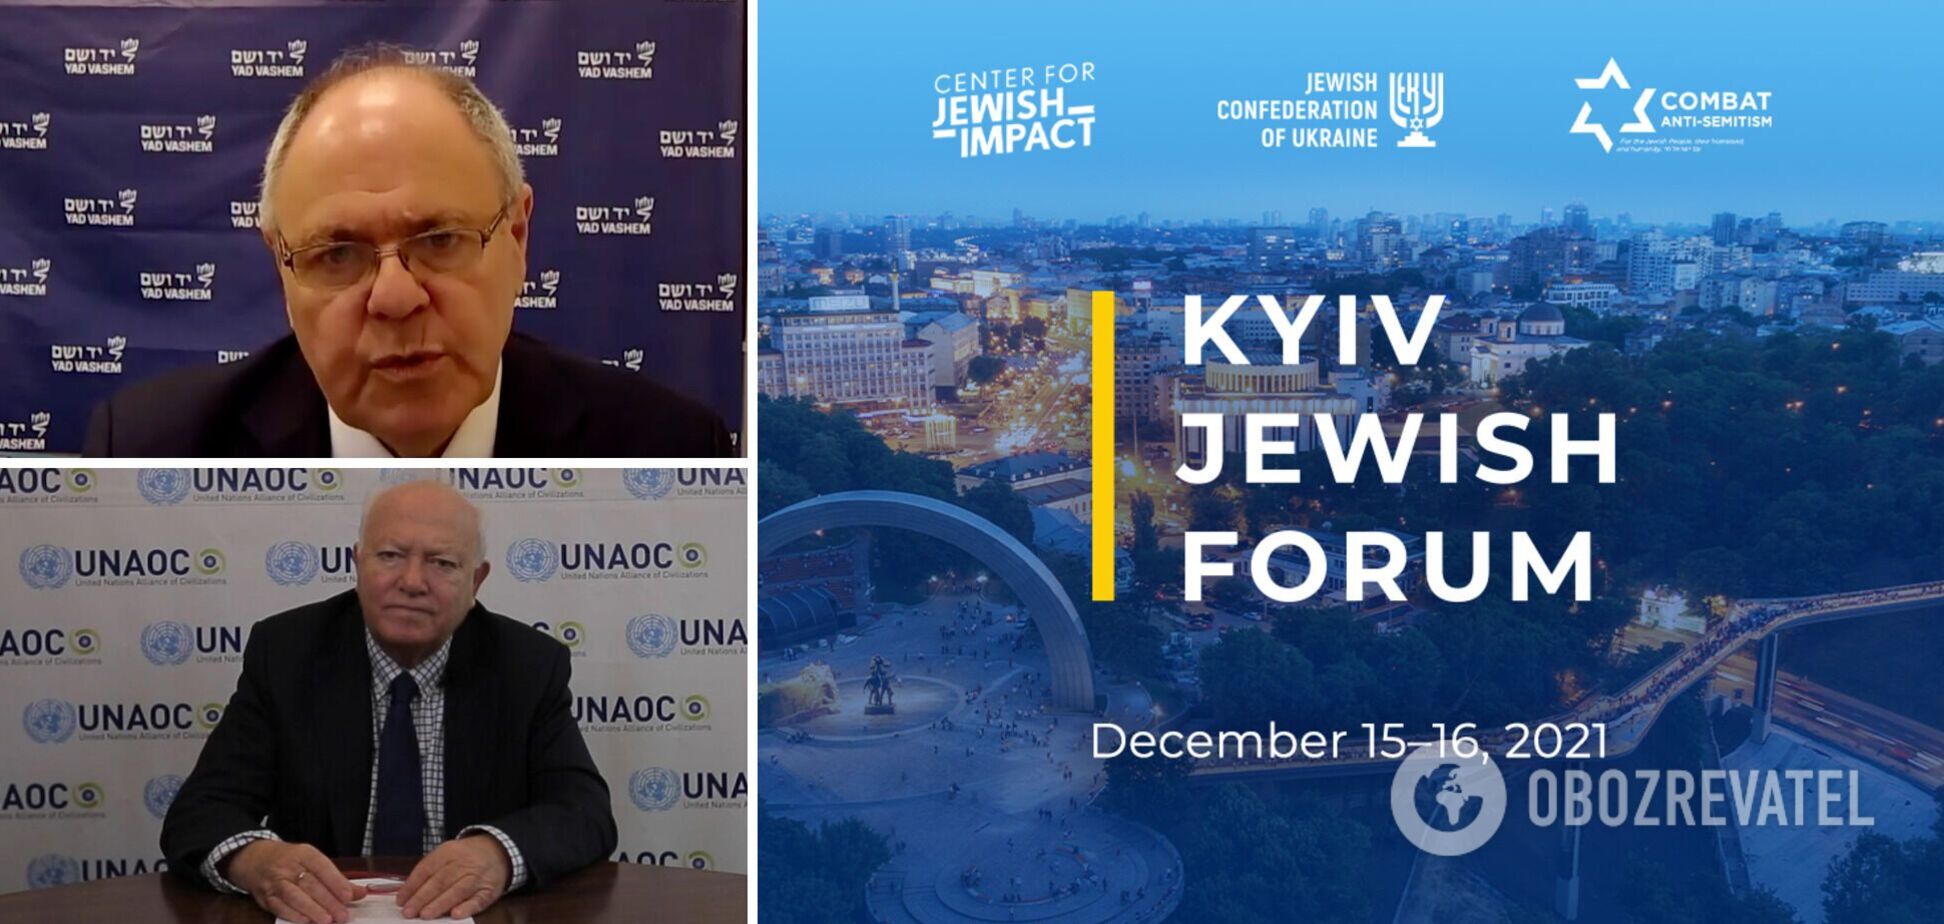 Kyiv Jewish Forum: на форуме обсудили проблему отрицания Холокоста и роста антисемитизма в мире